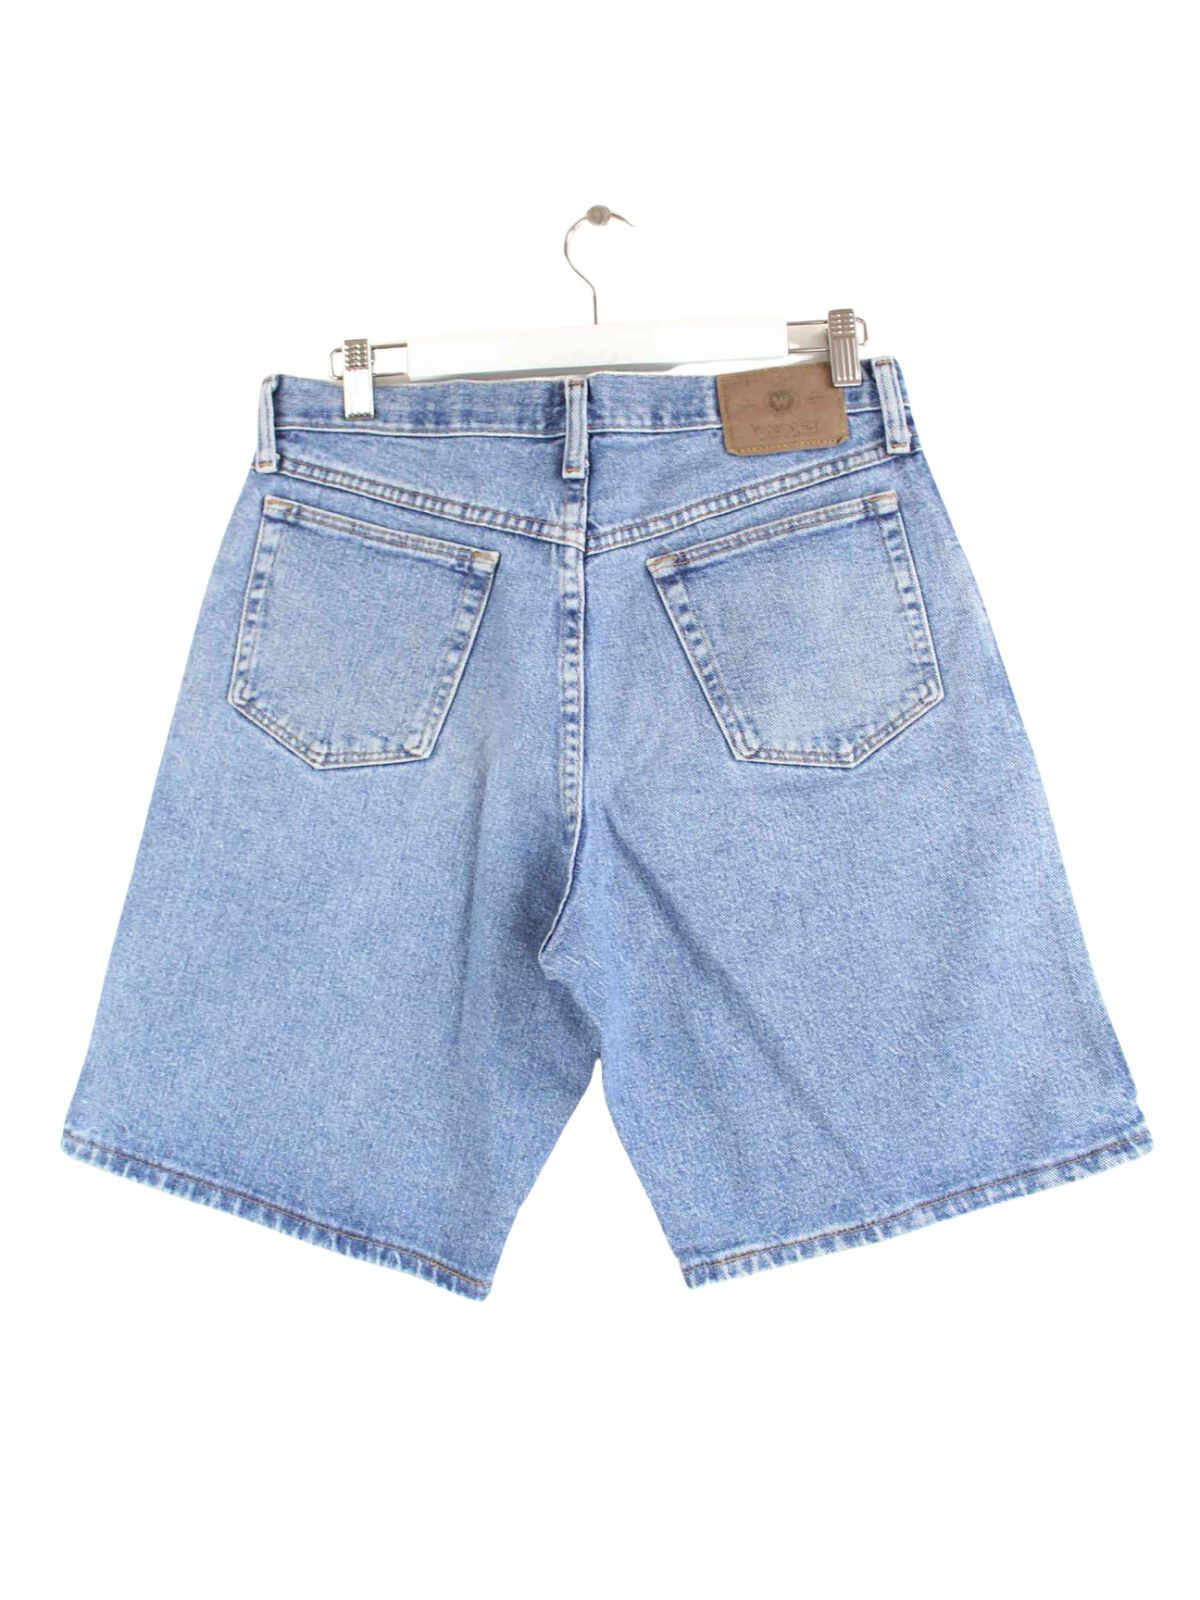 Wrangler Jeans Shorts Blau W30 (back image)